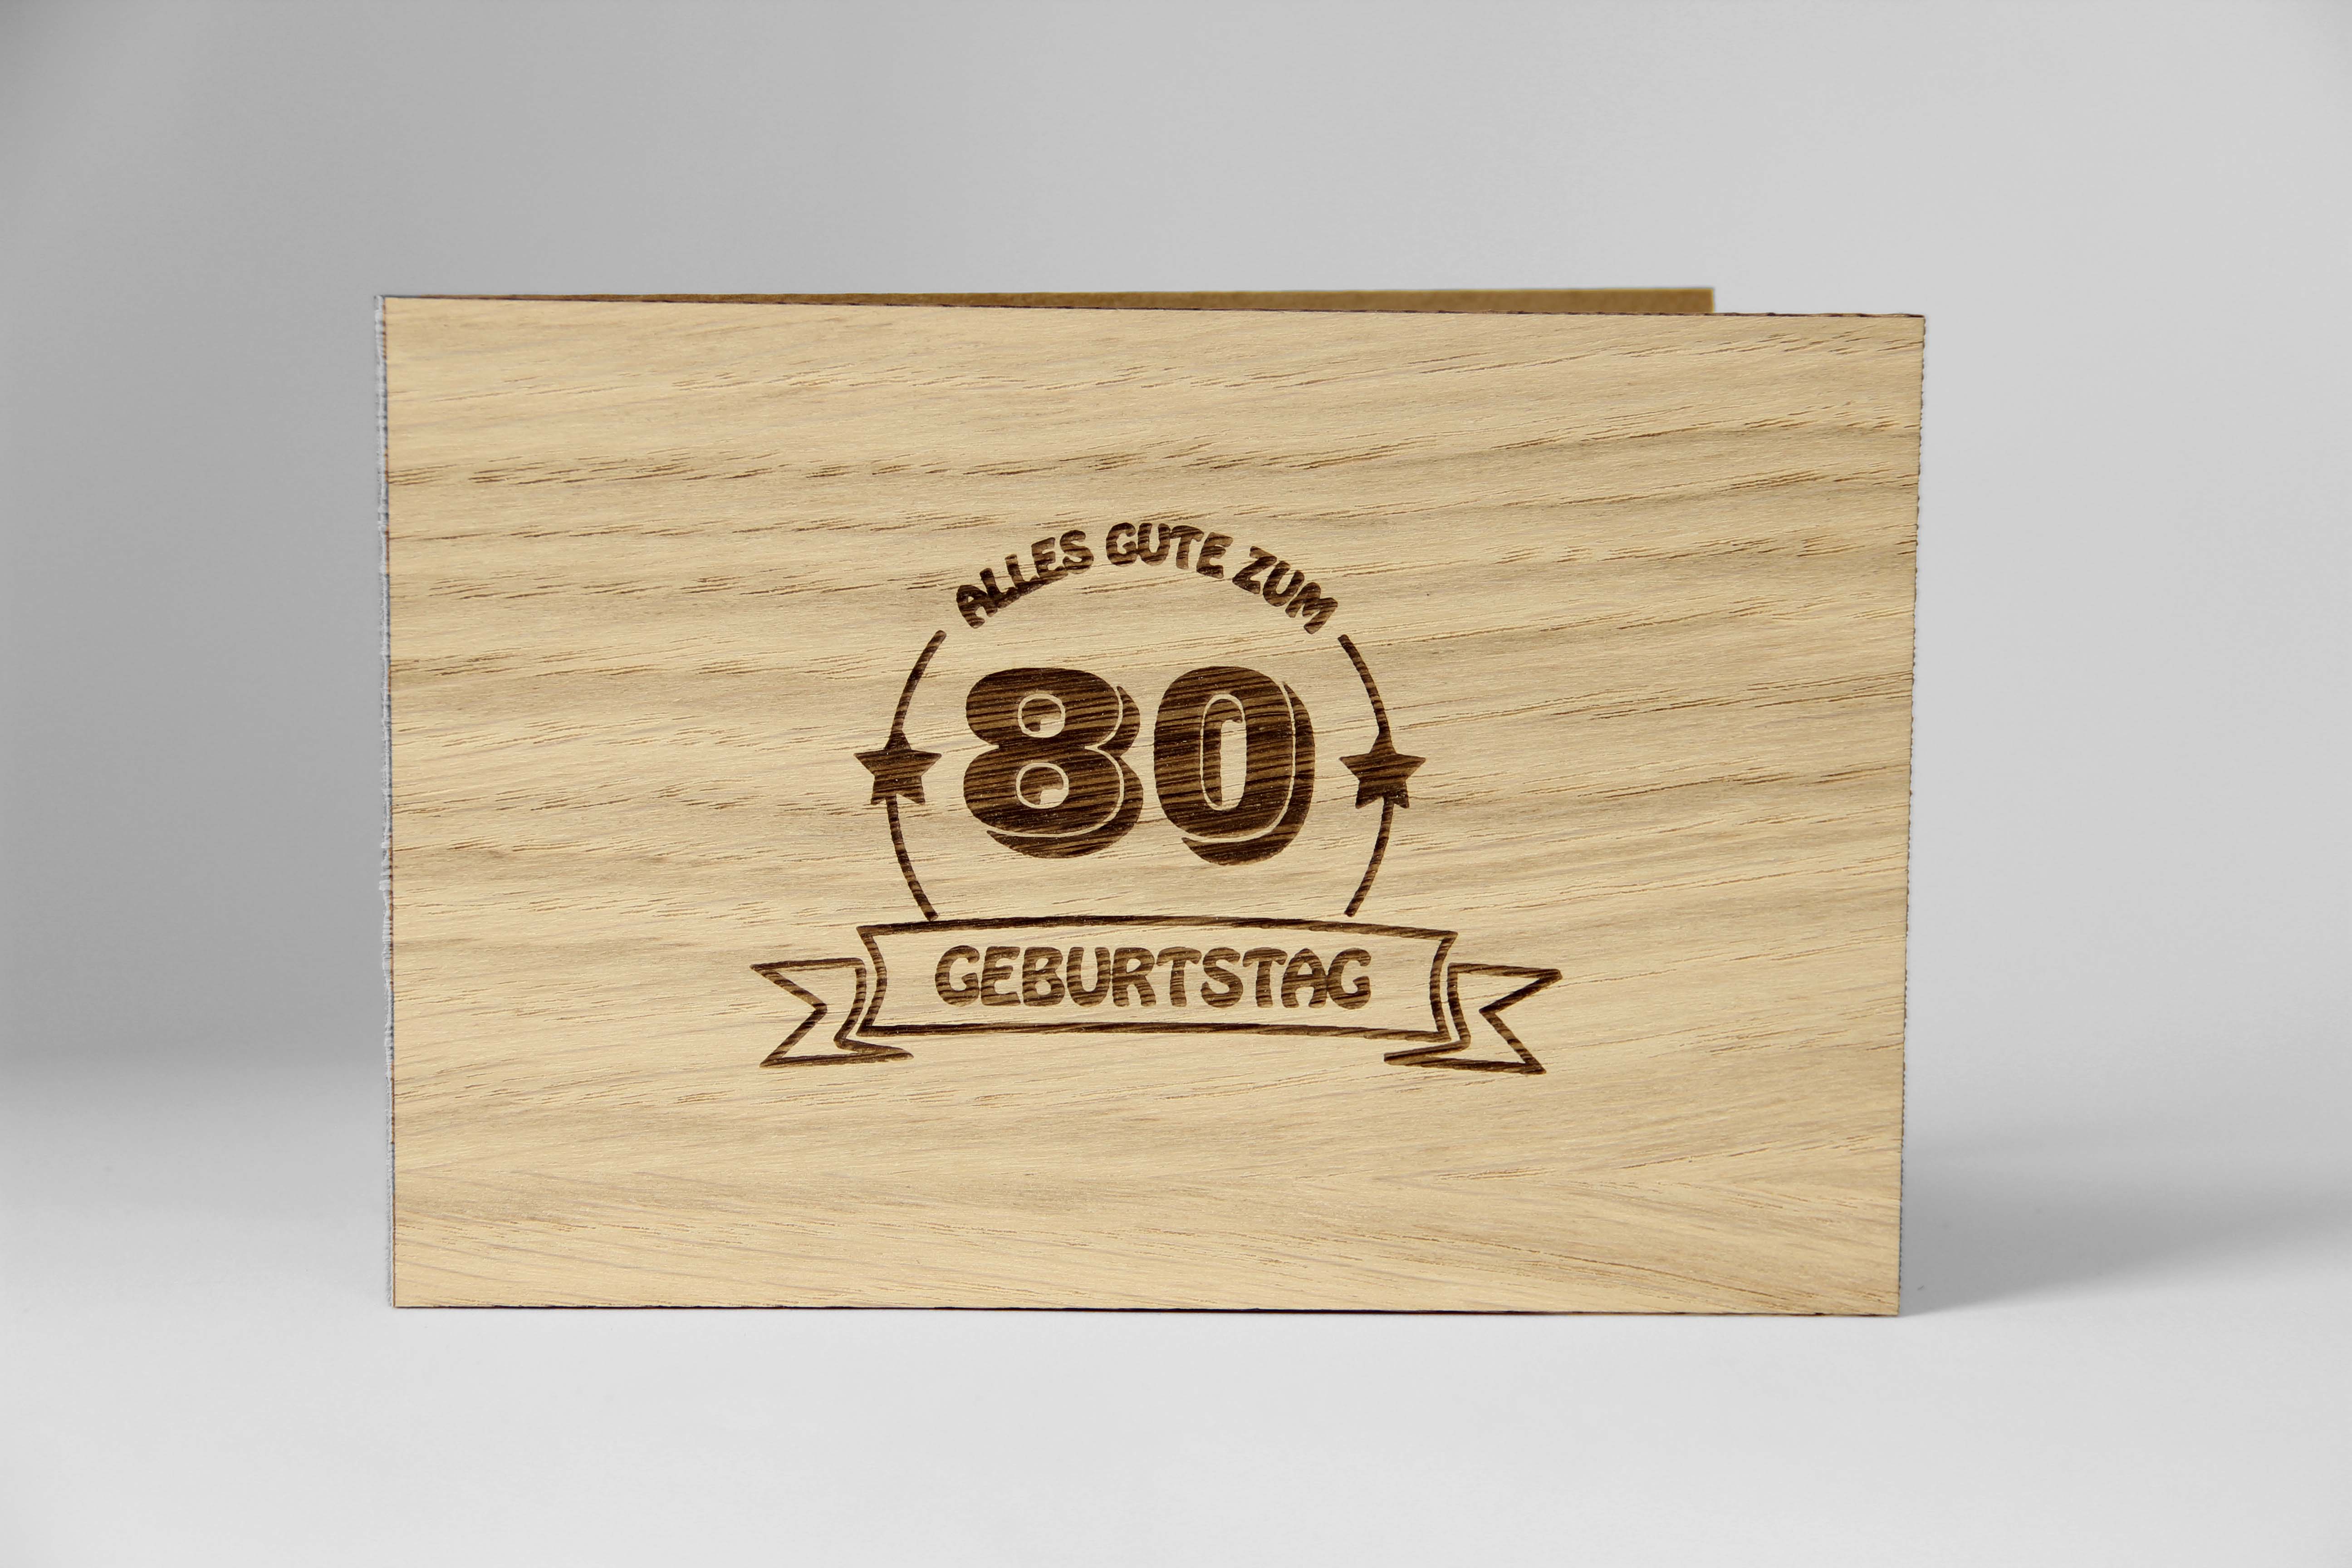 Holzgrusskarten - Geburtstagskarte "Alles Gute zum 80 Geburtstag" aus Eiche